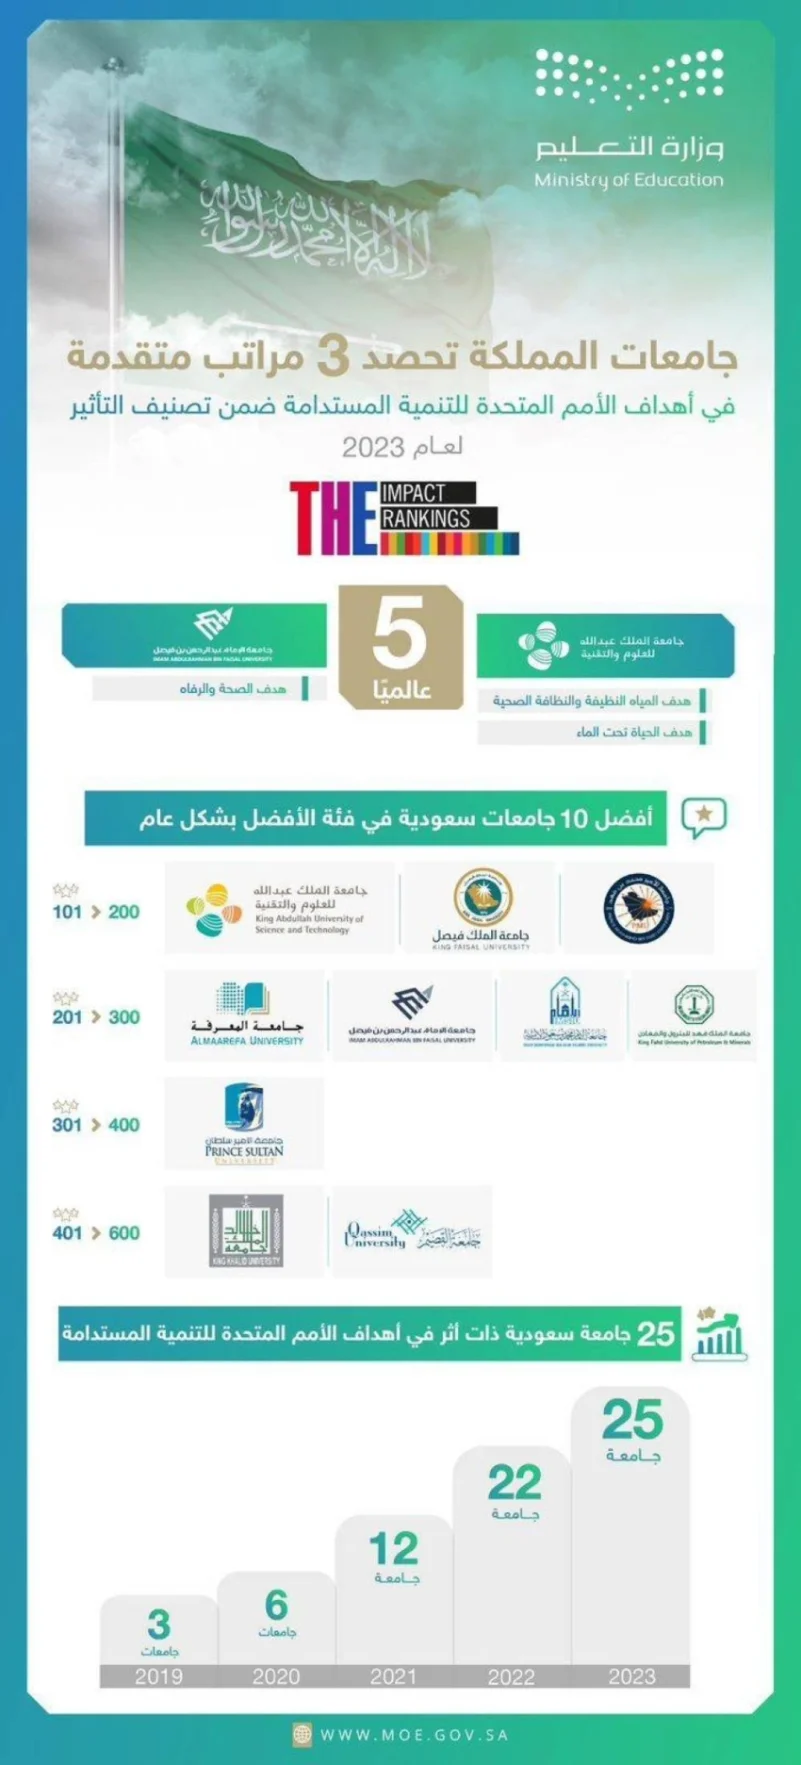 (25) جامعة سعودية ضمن التصنيف العالمي للجامعات المؤثرة في تحقيق أهداف التنمية المستدامة